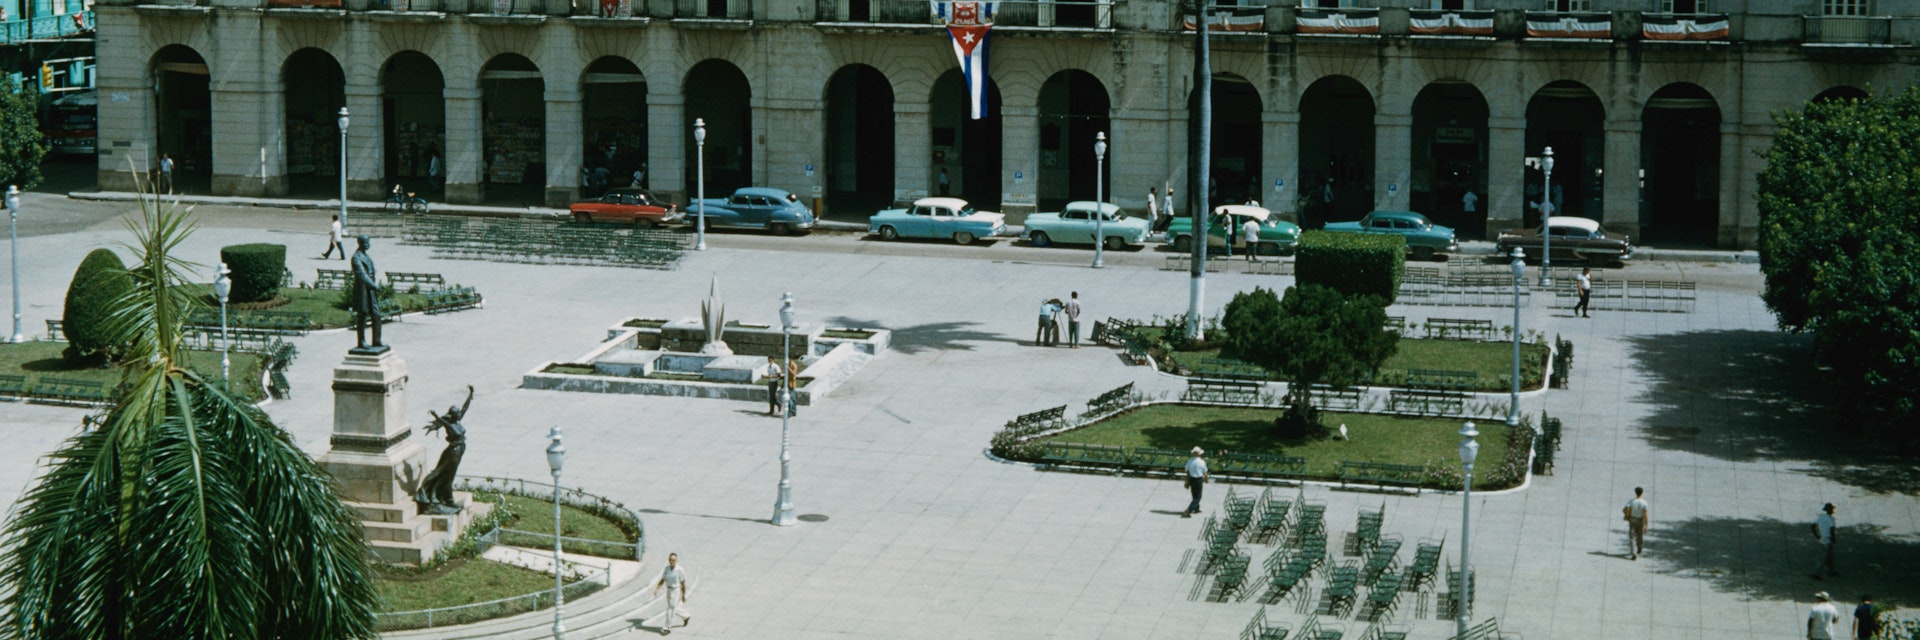 The Palacio de Gobierno (Governor's Palace) on the Plaza de Armas, later renamed Parque de Libertad (Liberty Park) in Matanzas, Cuba, circa 1959.  (Photo by Archive Photos/Getty Images)